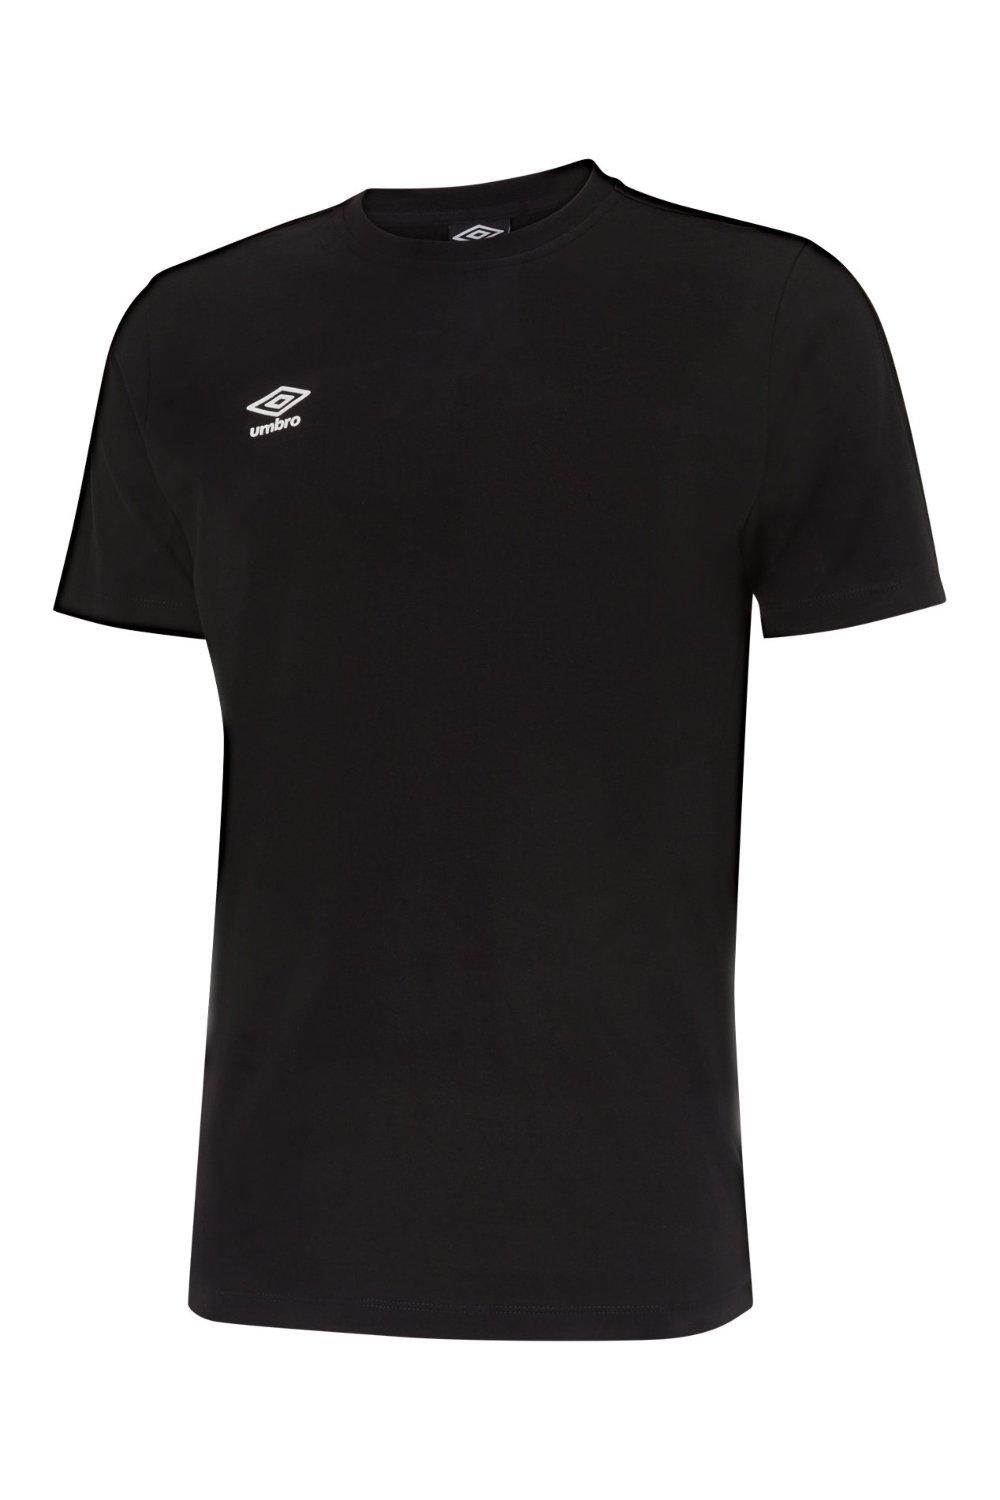 Футболка Pro с лентой Umbro, черный футболка umbro футболка тренировочная umbro pro training tee 65844u kmk размер s черный